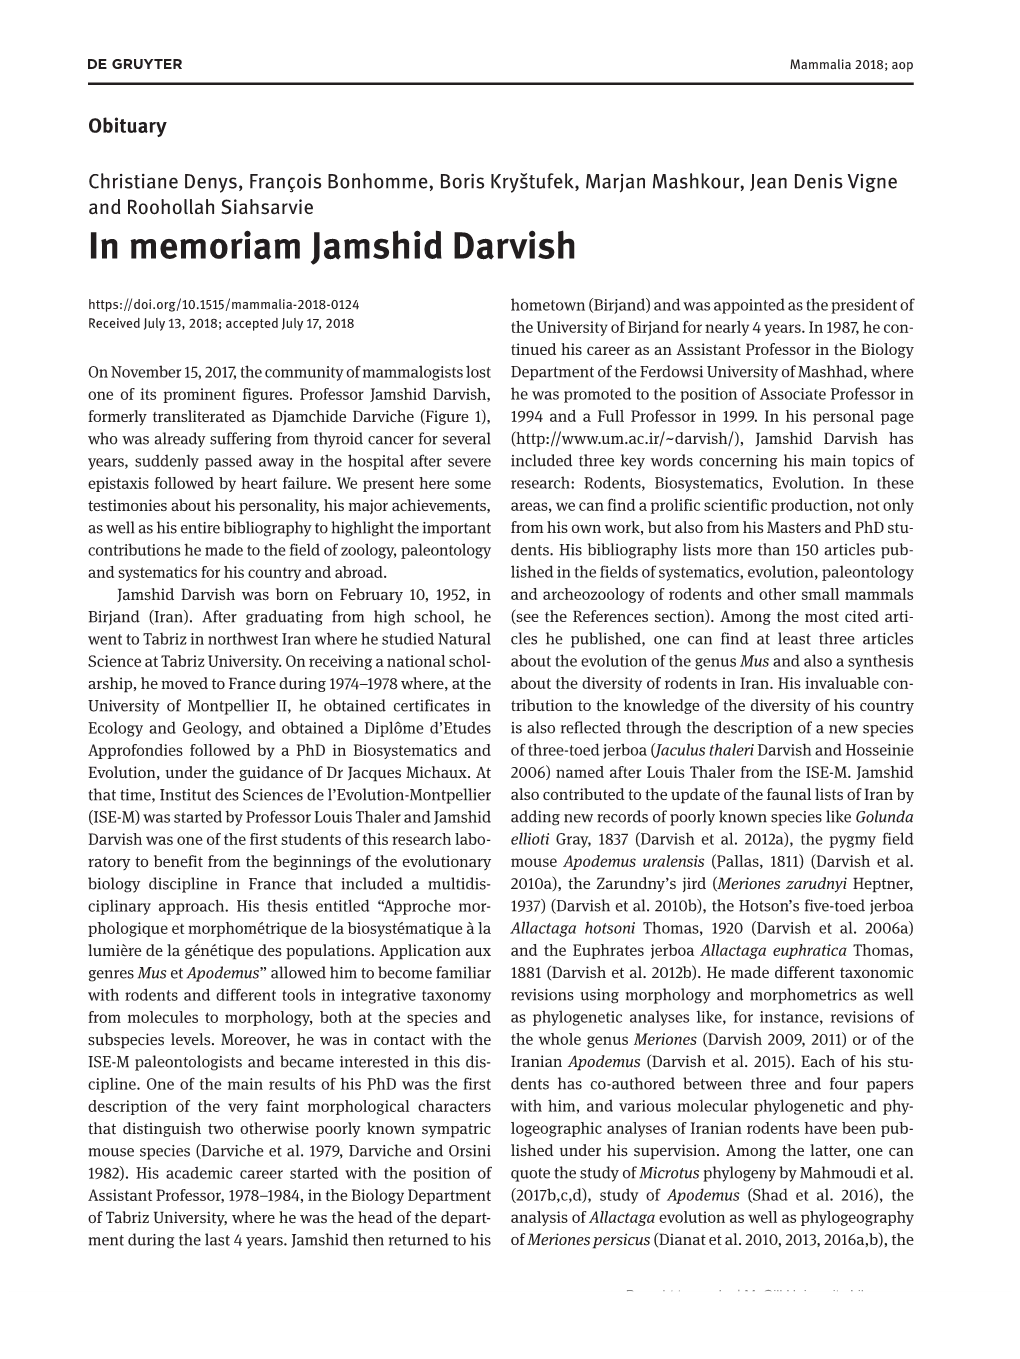 In Memoriam Jamshid Darvish